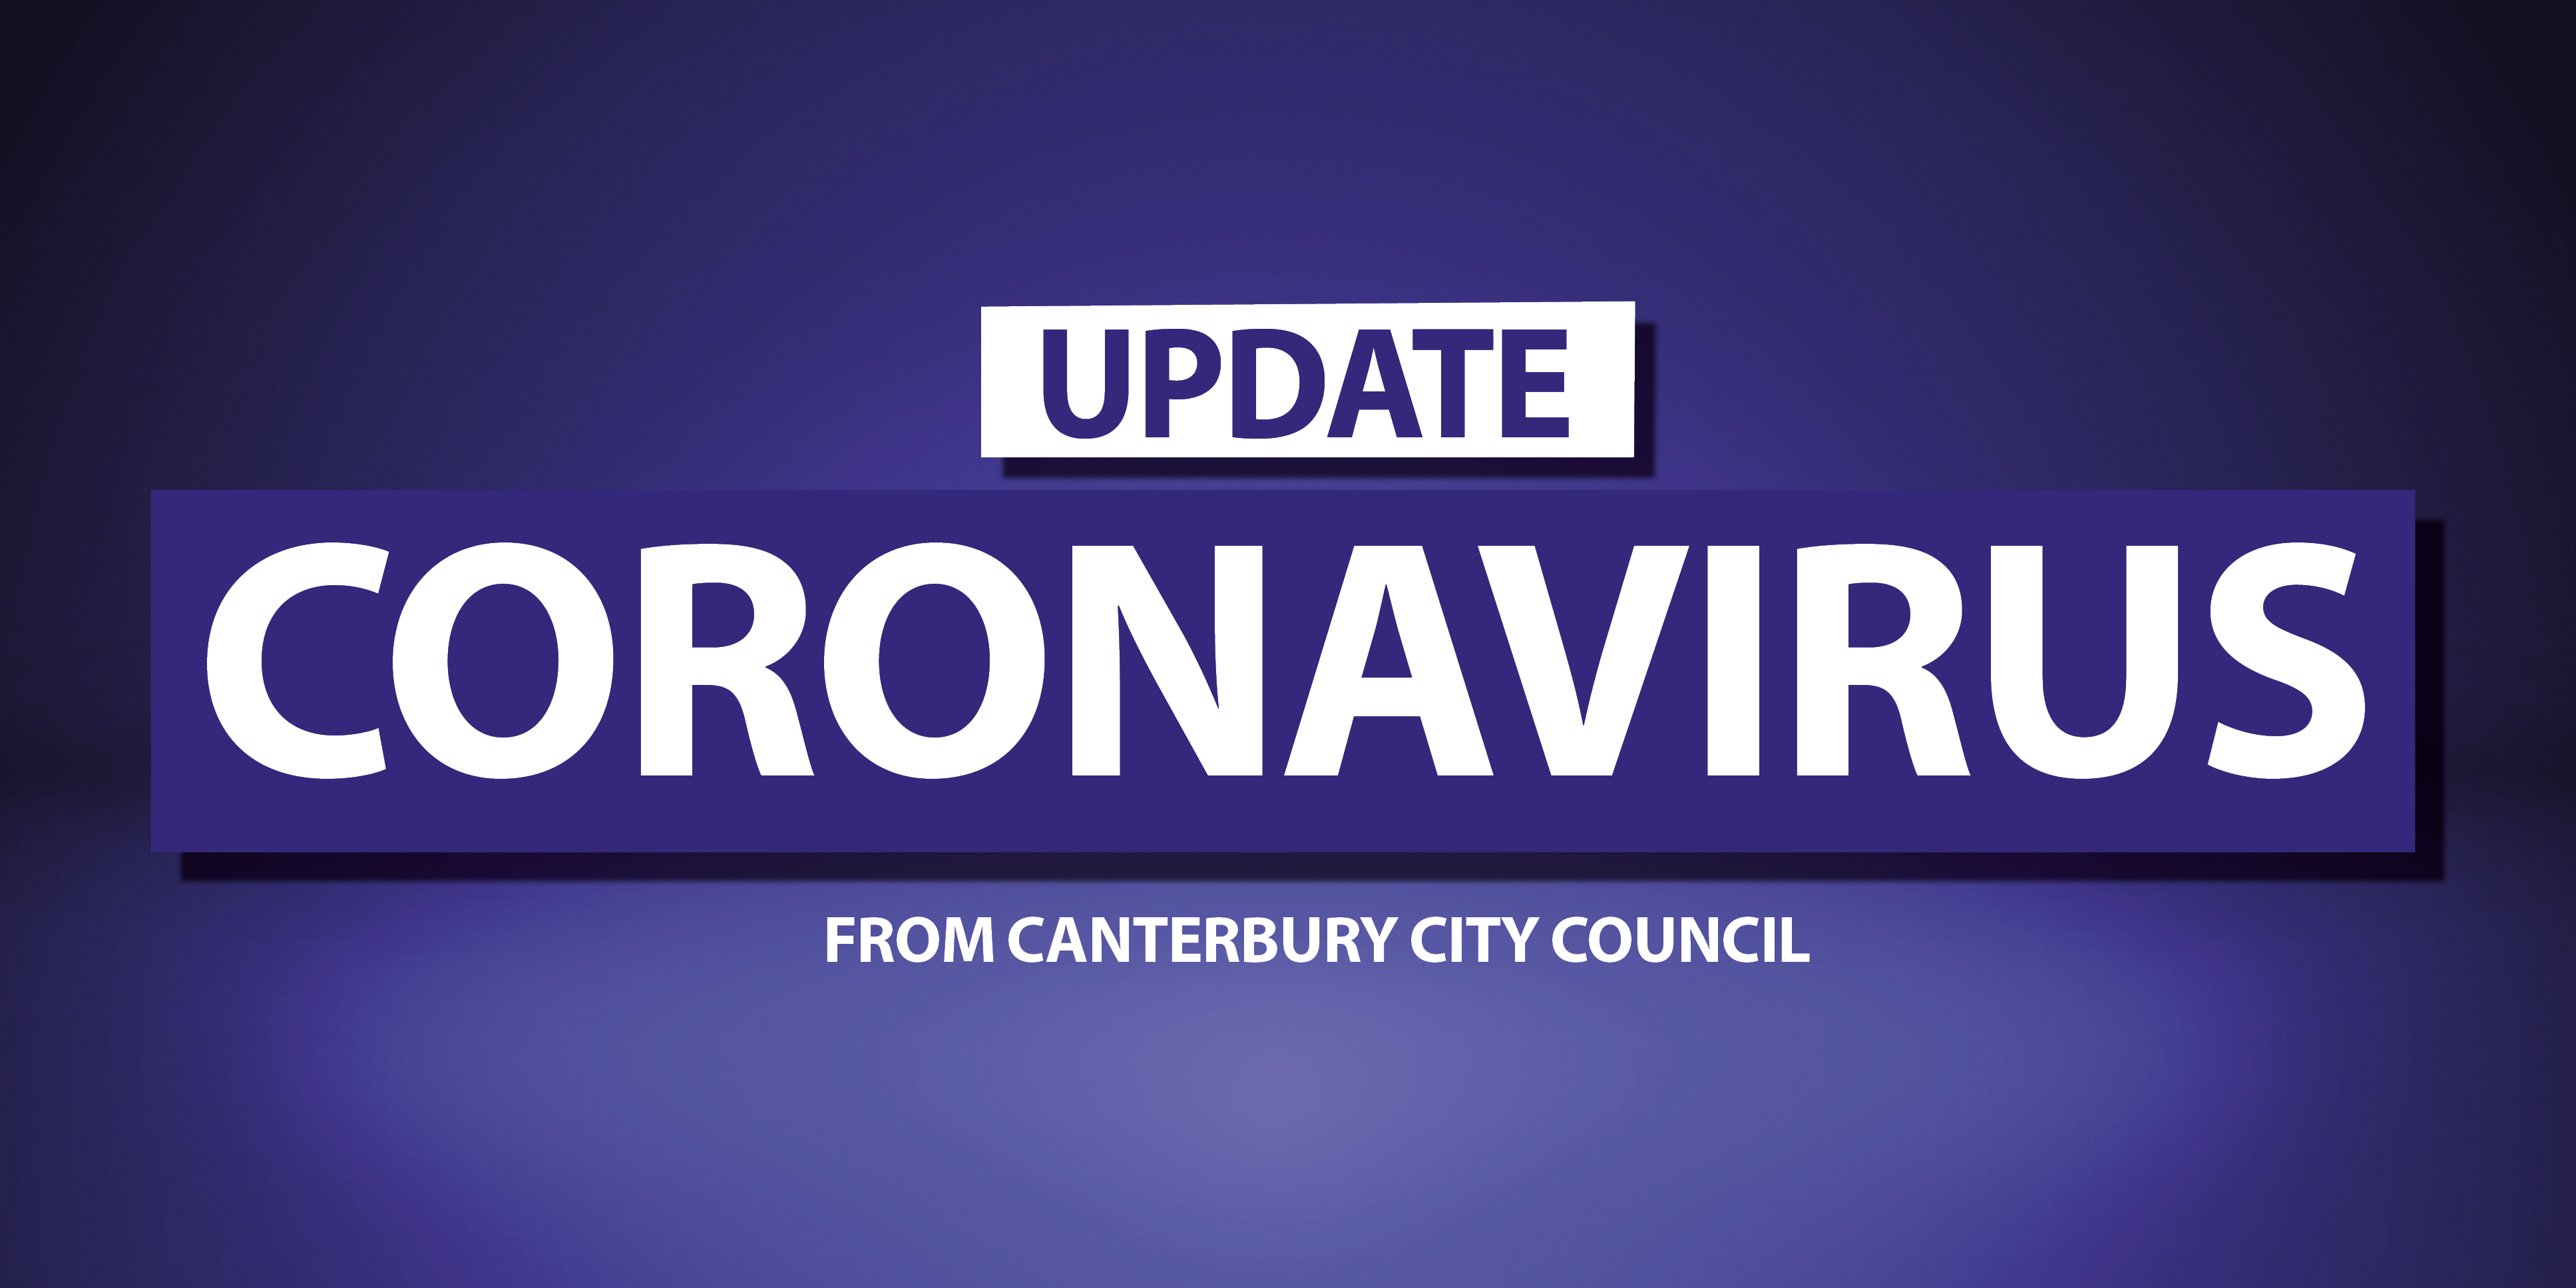 Coronavirus update from Canterbury City Council